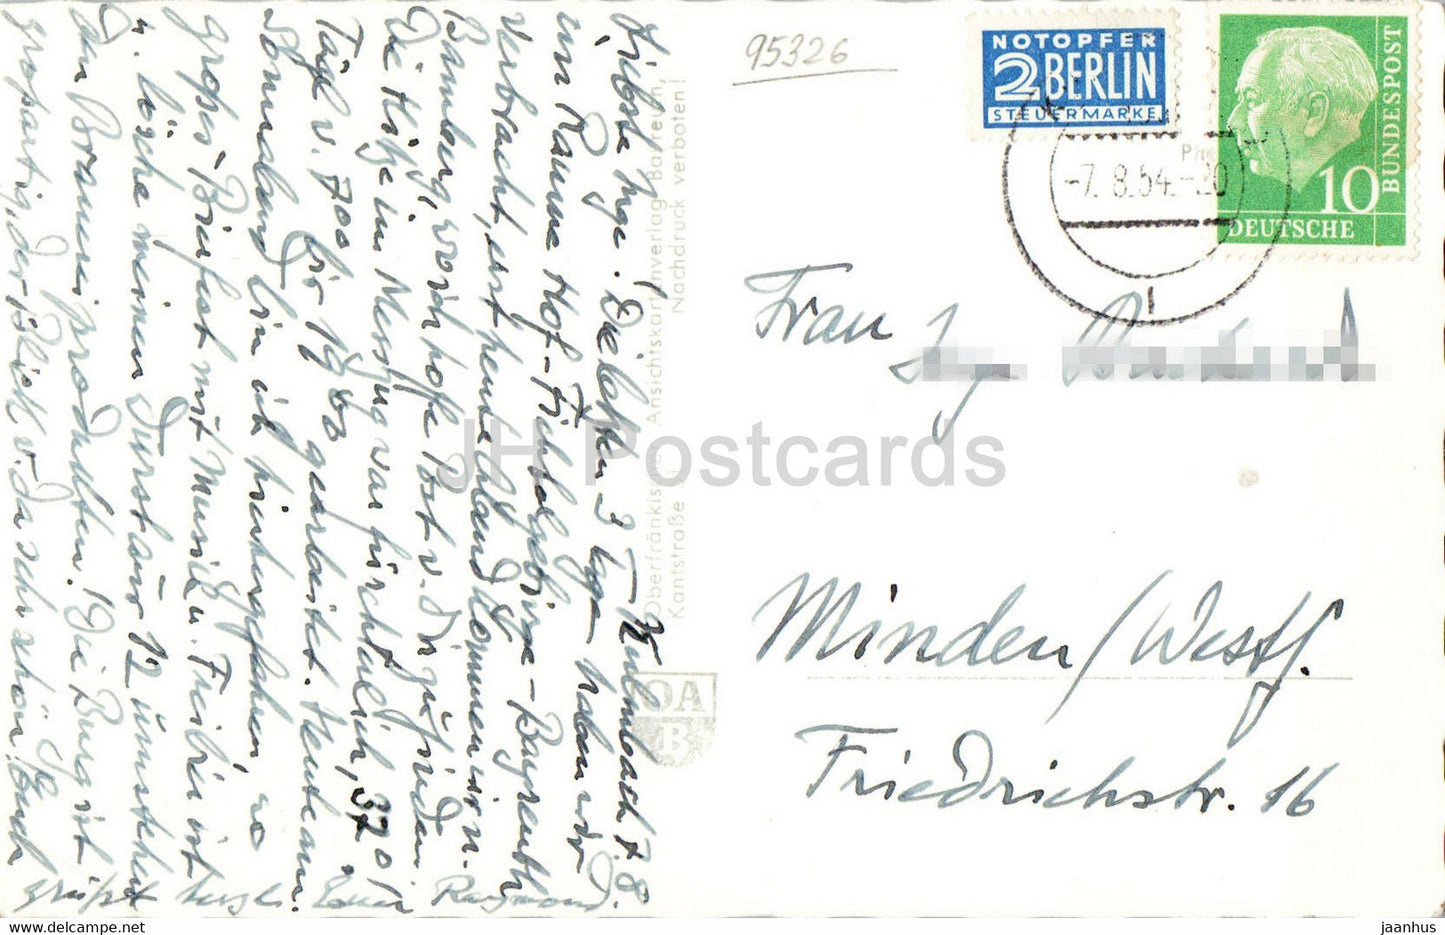 Gruss aus der Bierstadt Kulmbach - Bier - alte Postkarte - 1954 - Deutschland - gebraucht